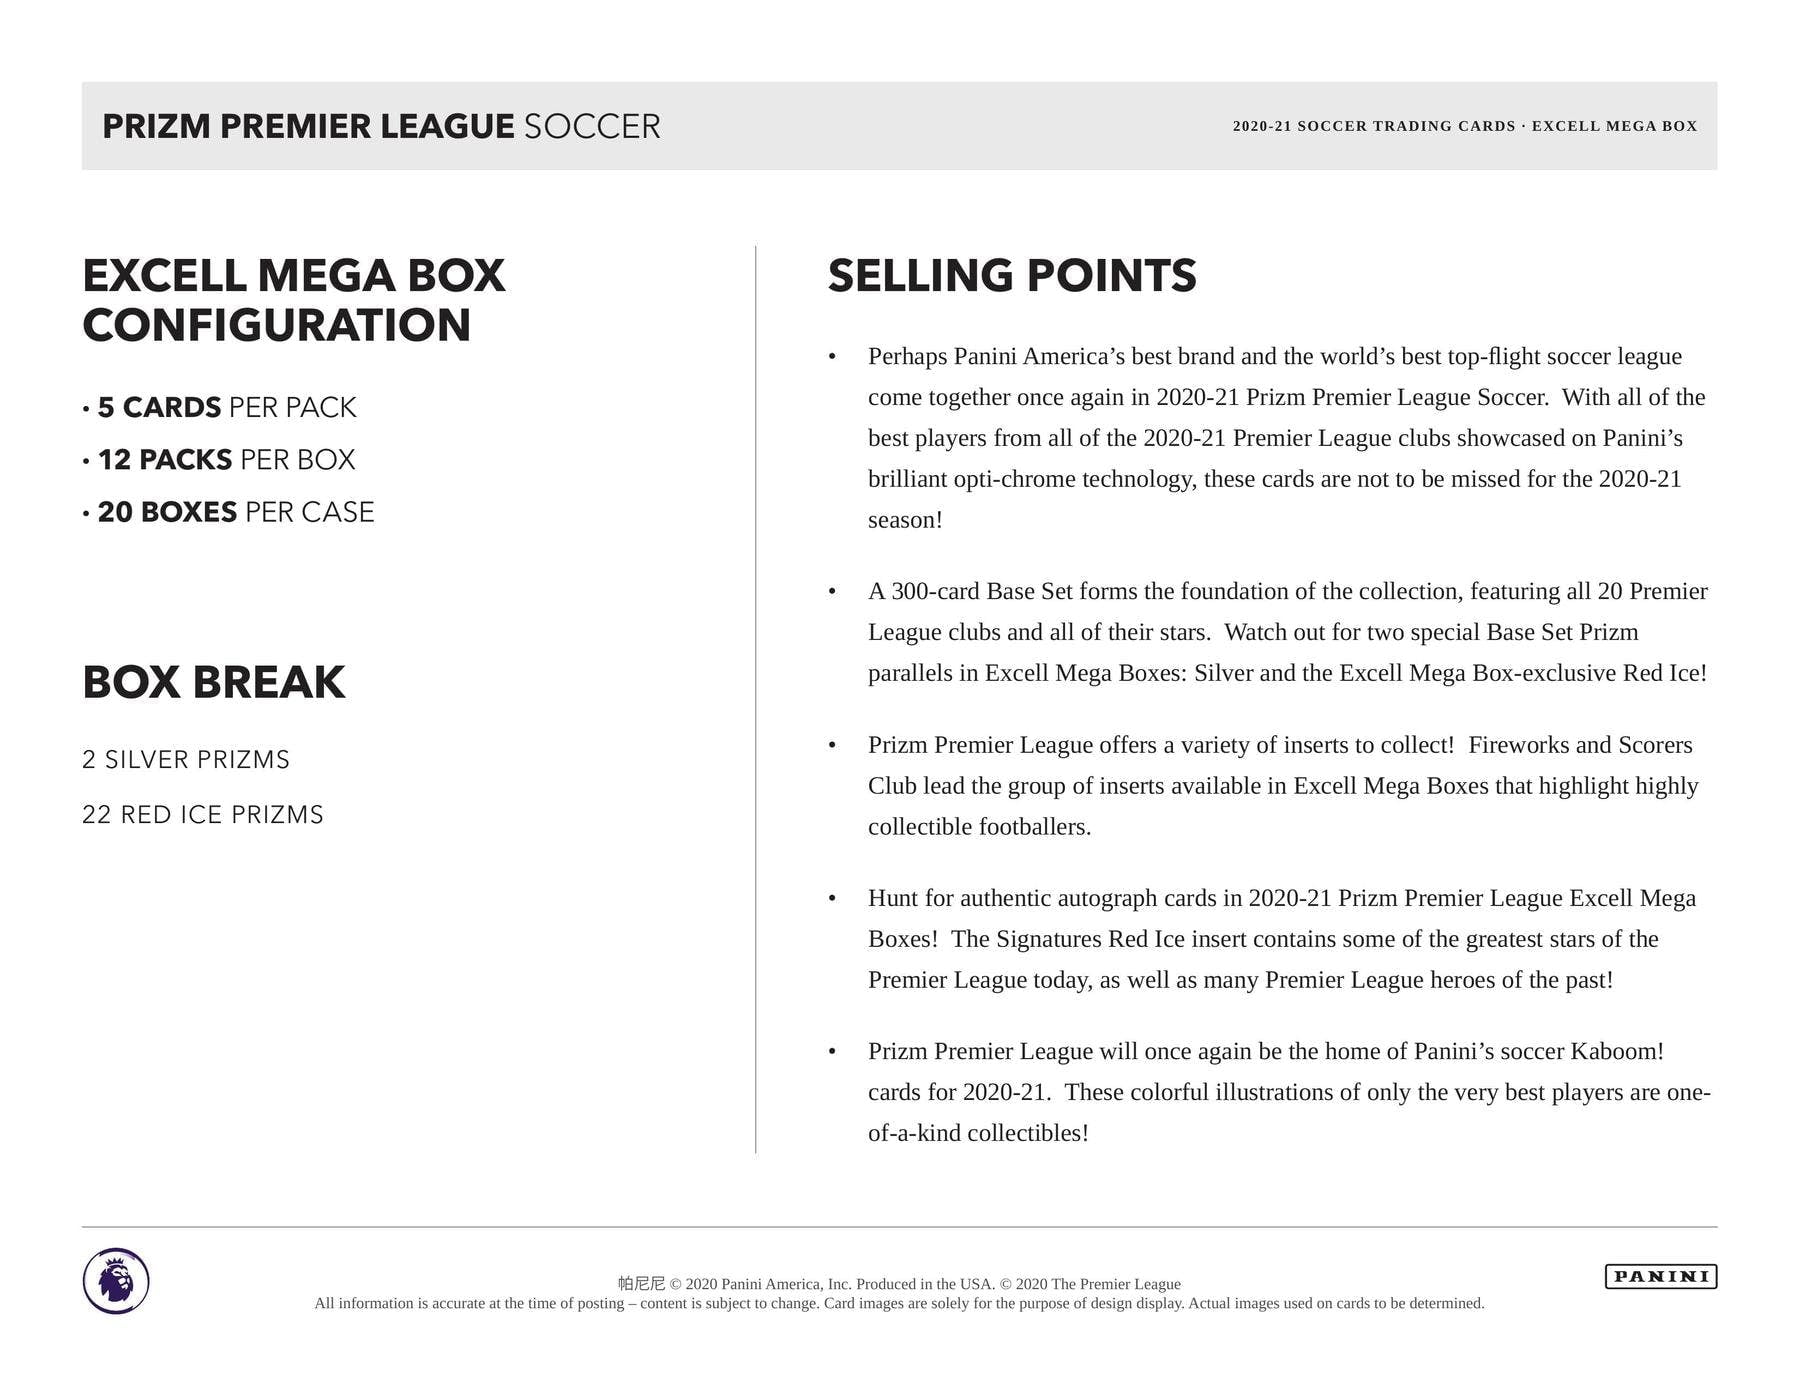 2020/21 Panini Prizm Premier League Soccer Mega Box (Red Ice Prizms)